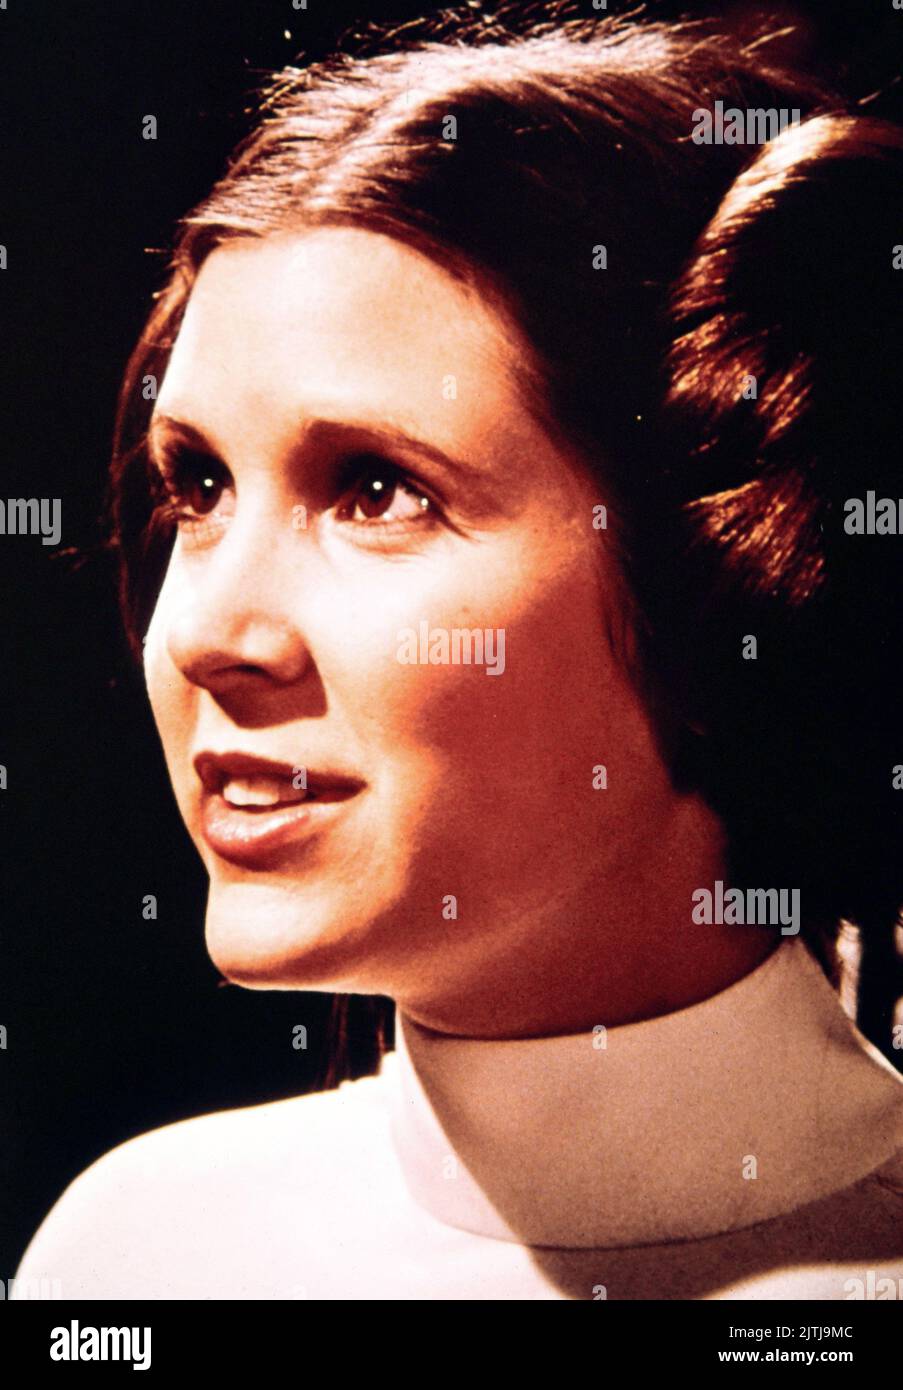 Star Wars, alias Krieg der Sterne, EE.UU. 1977, Región: George Lucas, Darsteller: Carrie Fisher Foto de stock